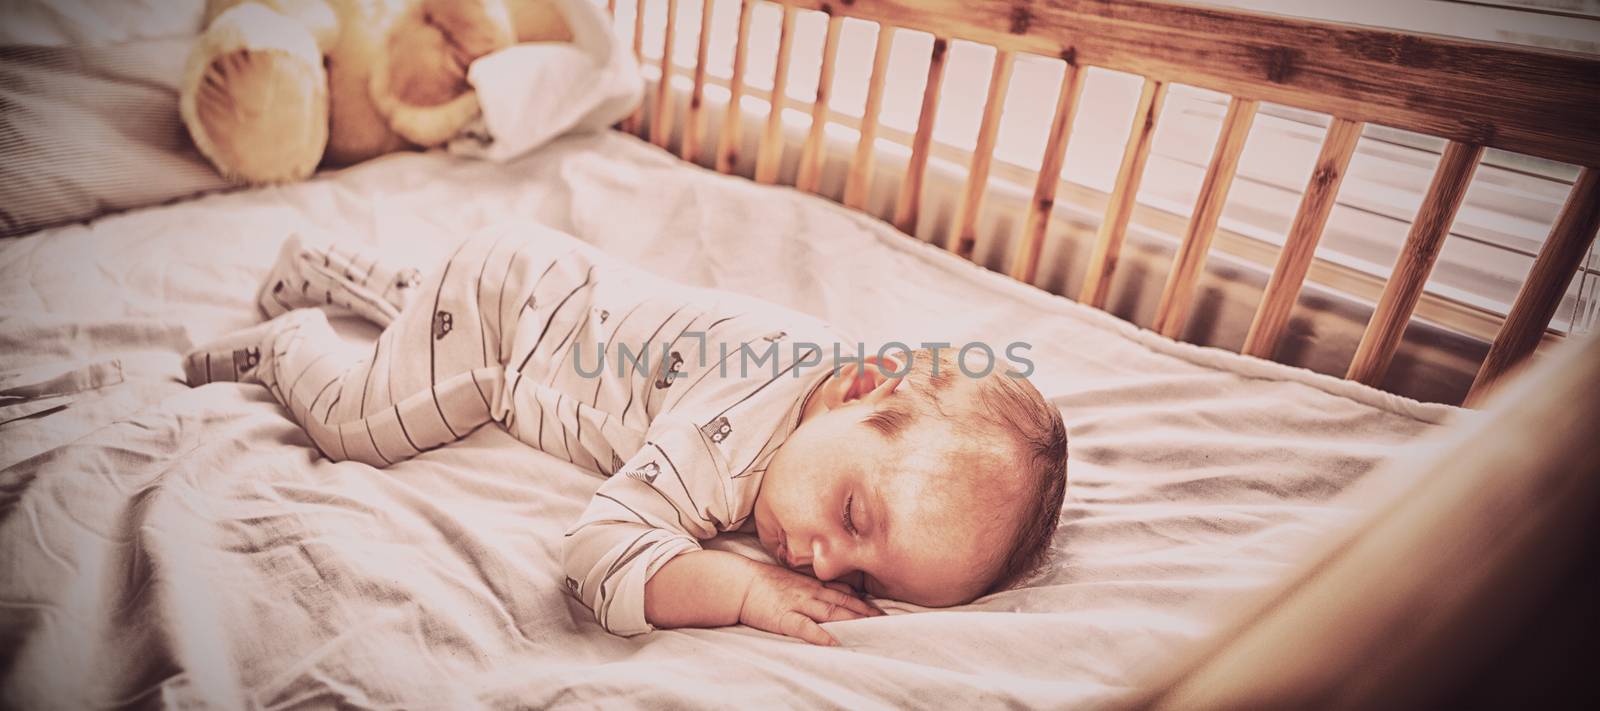 Baby boy sleeping on a cradle by Wavebreakmedia